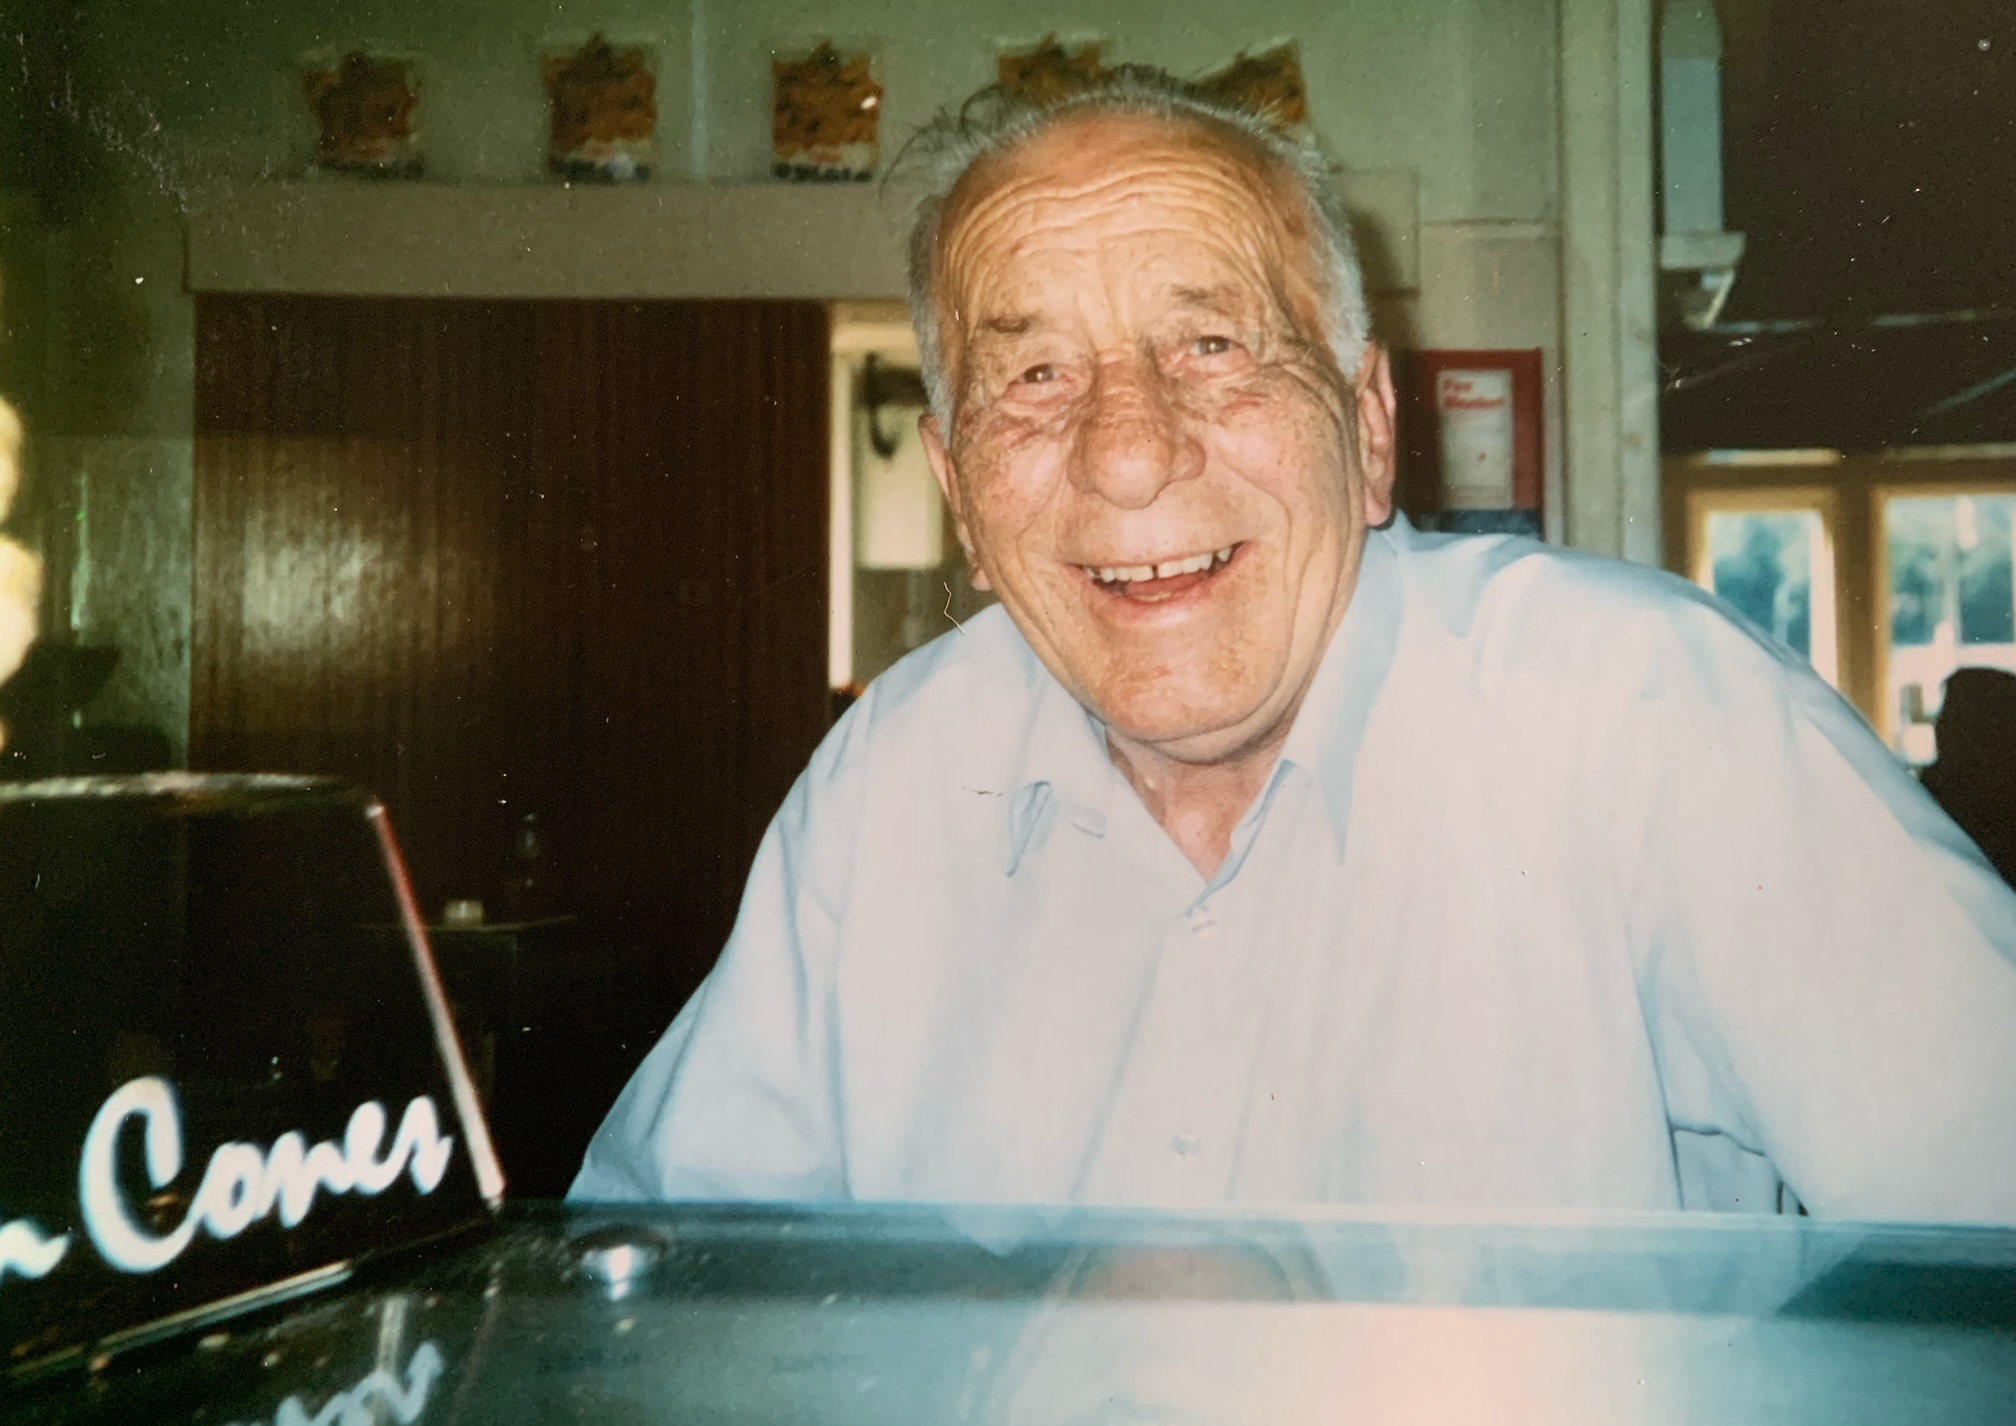 Bruno Rastelli-Lewis in 1952 at Lewis's Cafe Morecambe